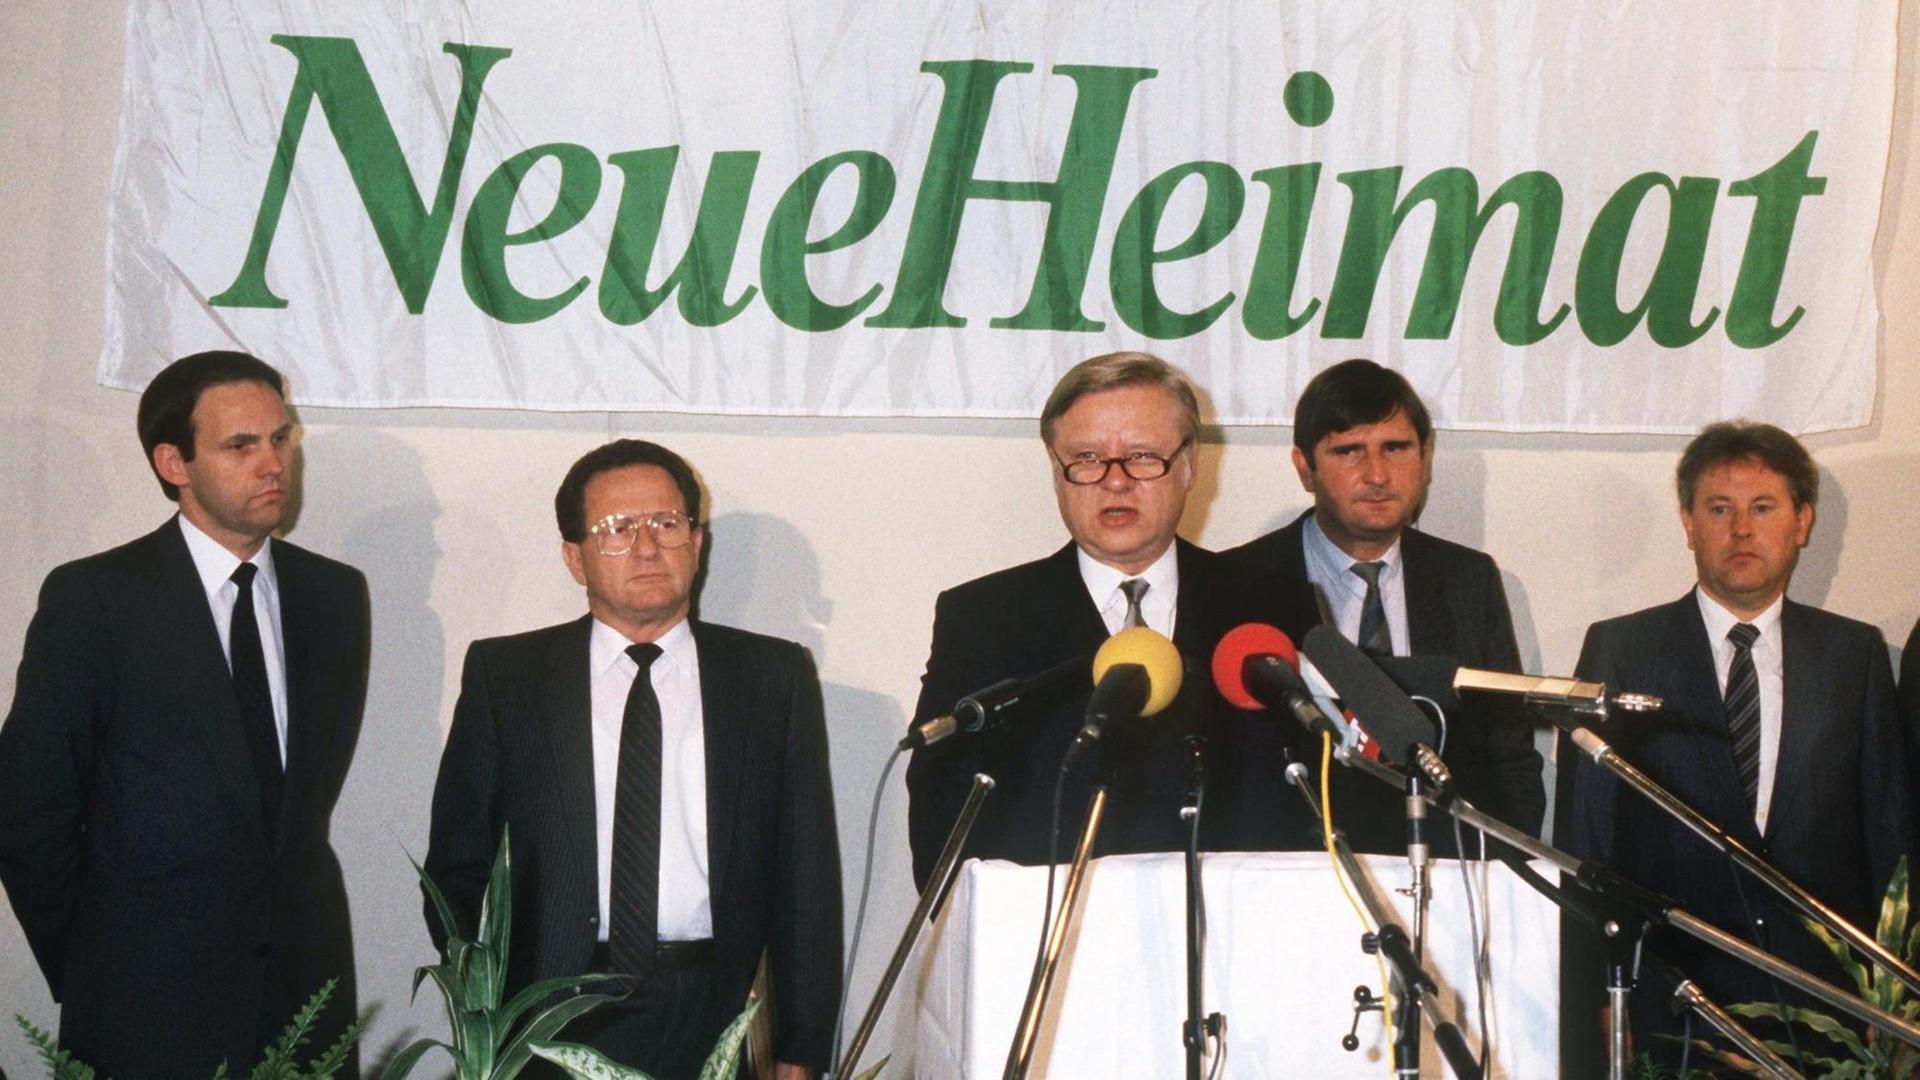 Der Berliner Brotfabrikant Horst Schiesser (M) hatte im September 1986 rund 190.000 Wohnungen des gewerkschaftseigenen Wohnungsbaukonzerns "Neue Heimat" für 1 Mark gekauft. Hier bei einer Pressekonferenz am 2. Oktober 1986 in Hamburg.